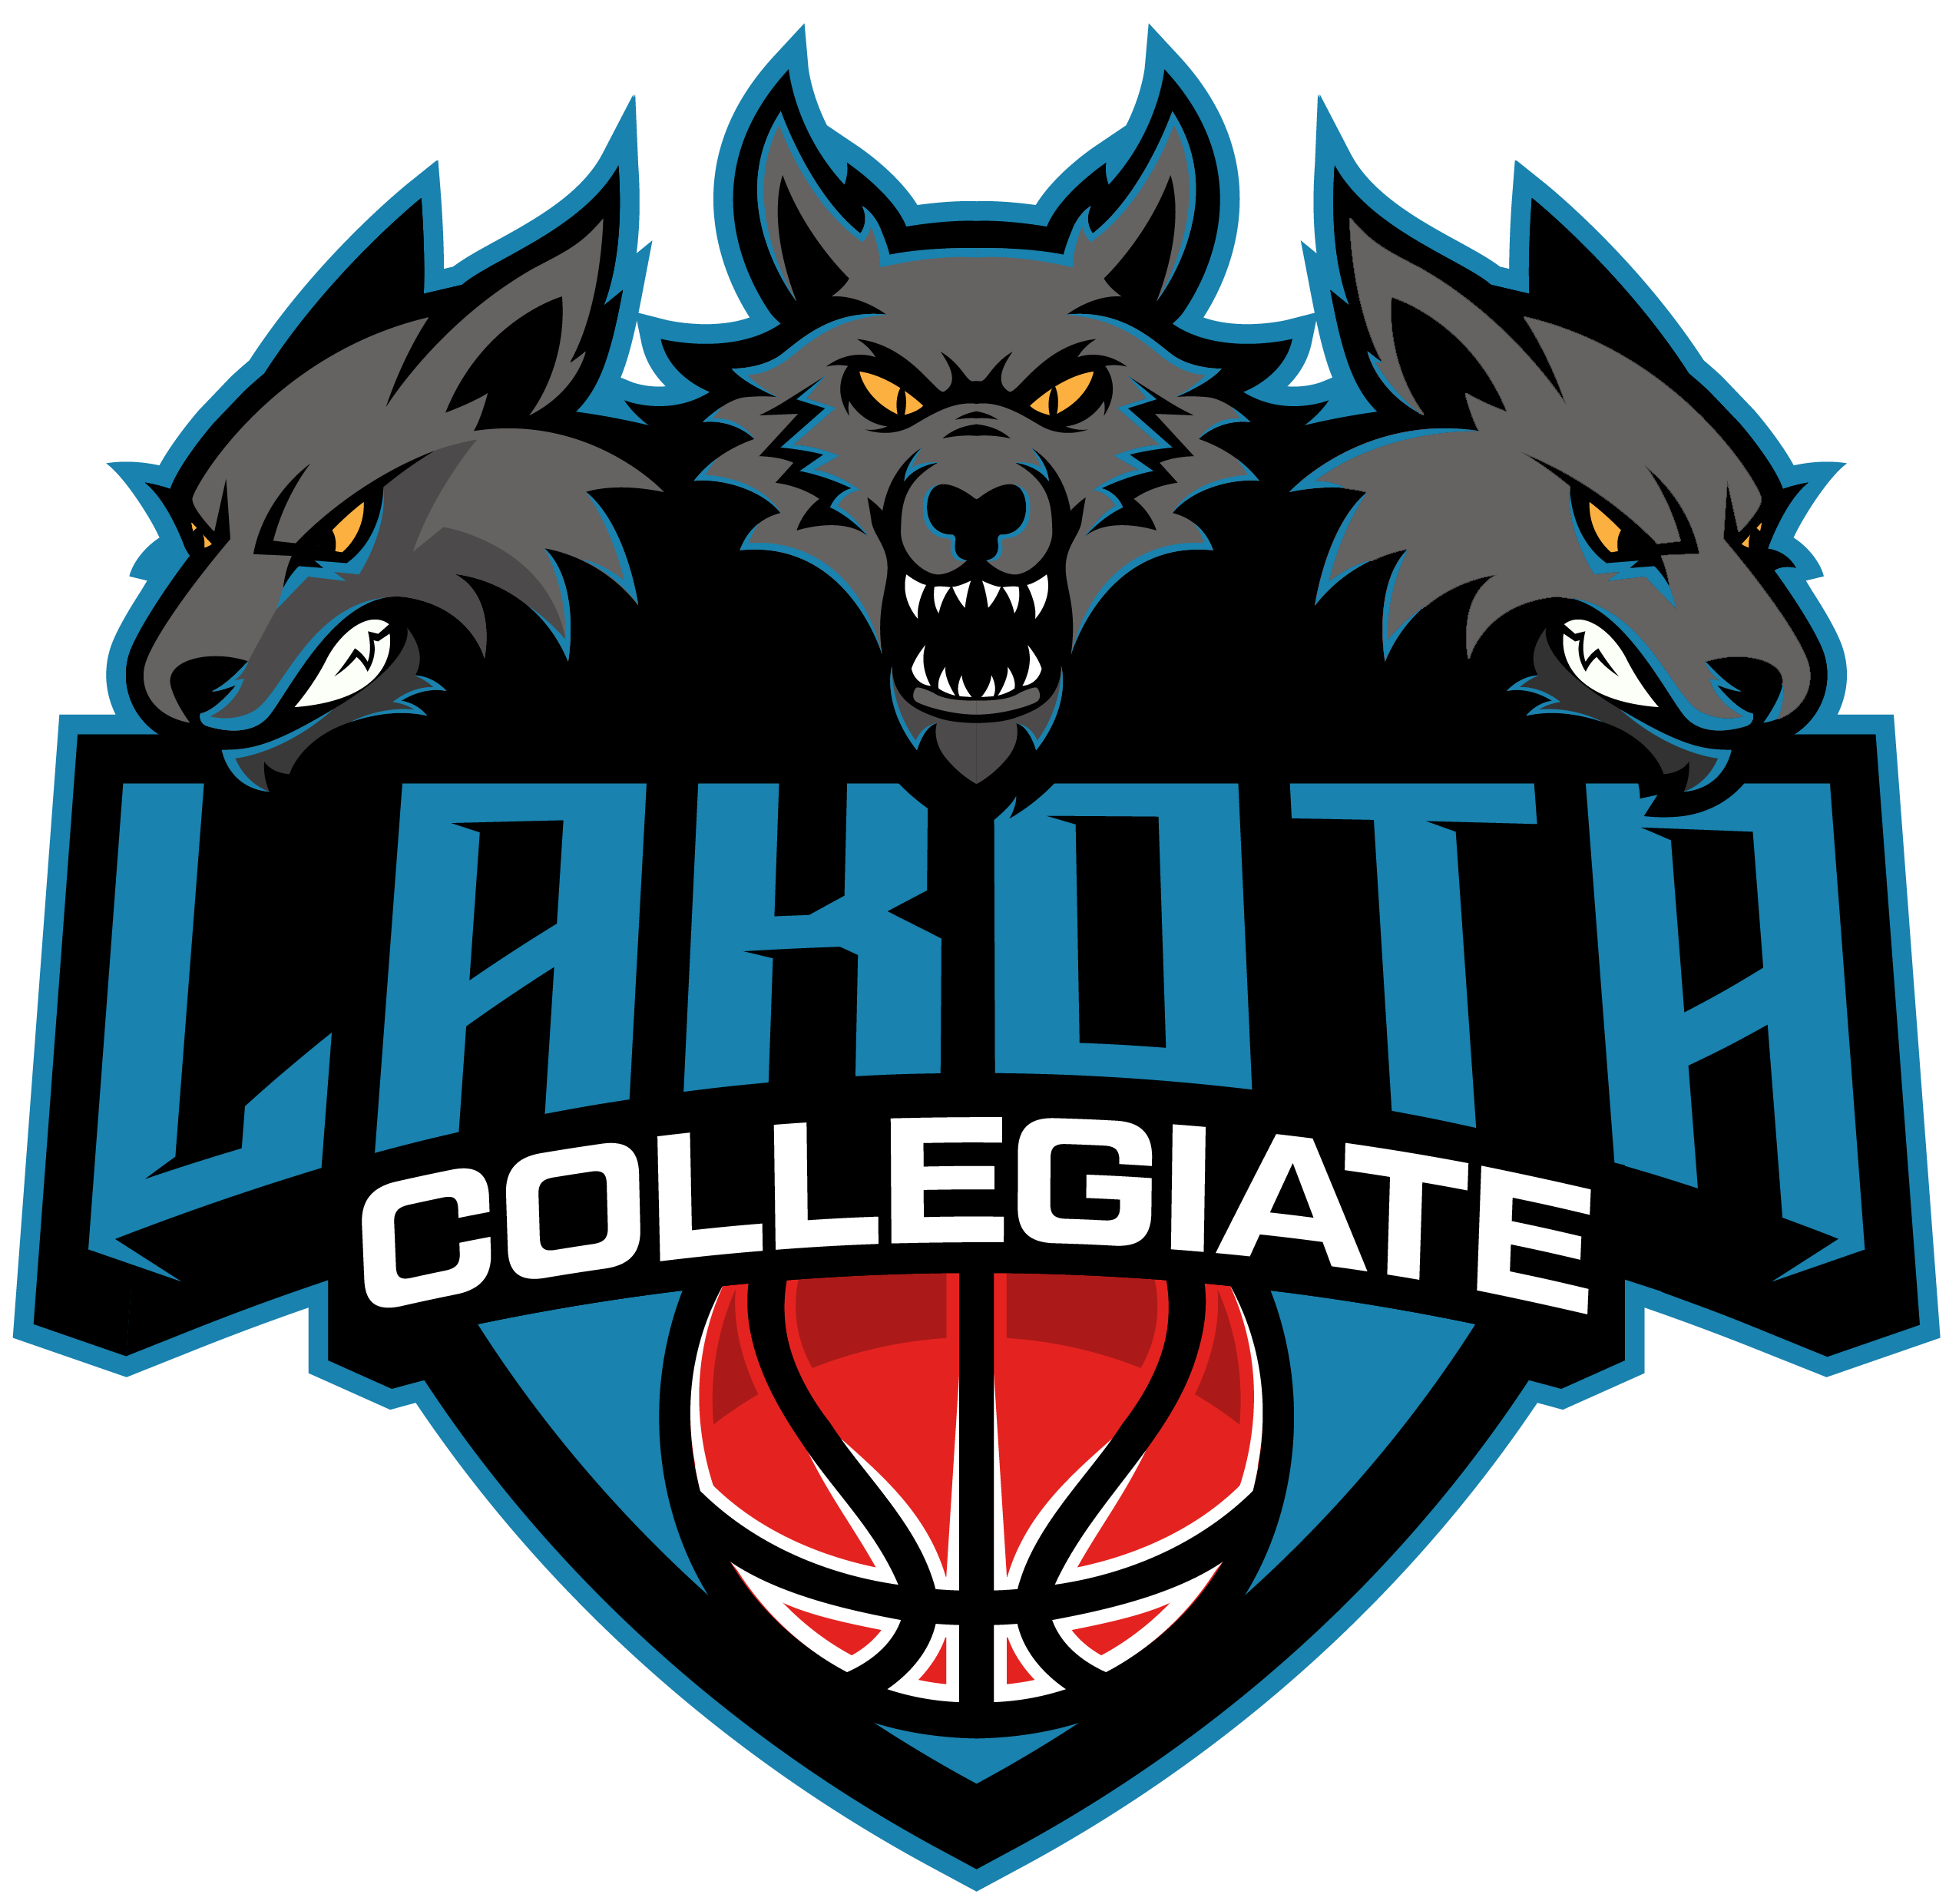 Lakota Collegiate Institute